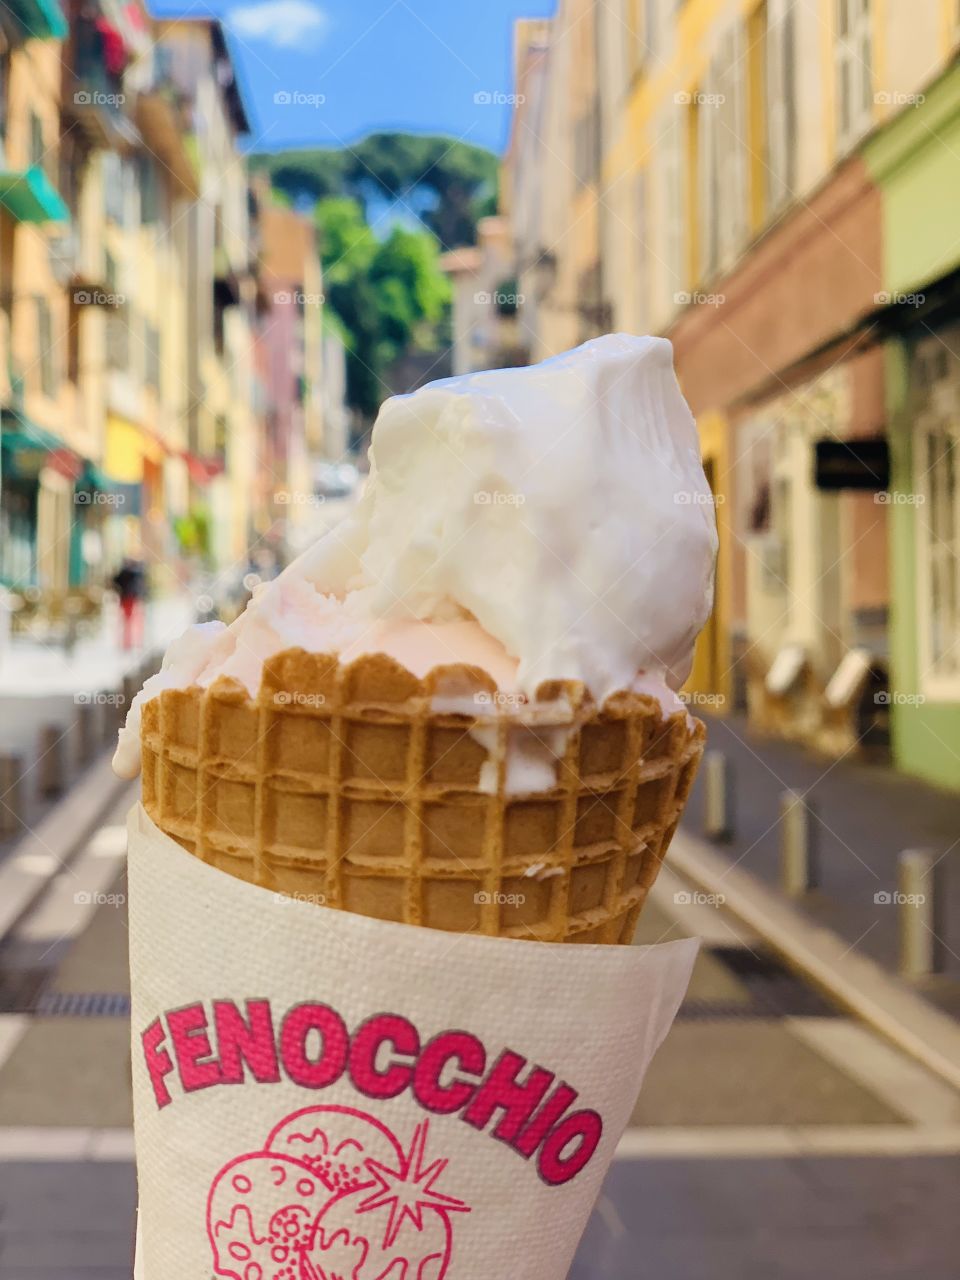 Fenocchio Ice-Cream